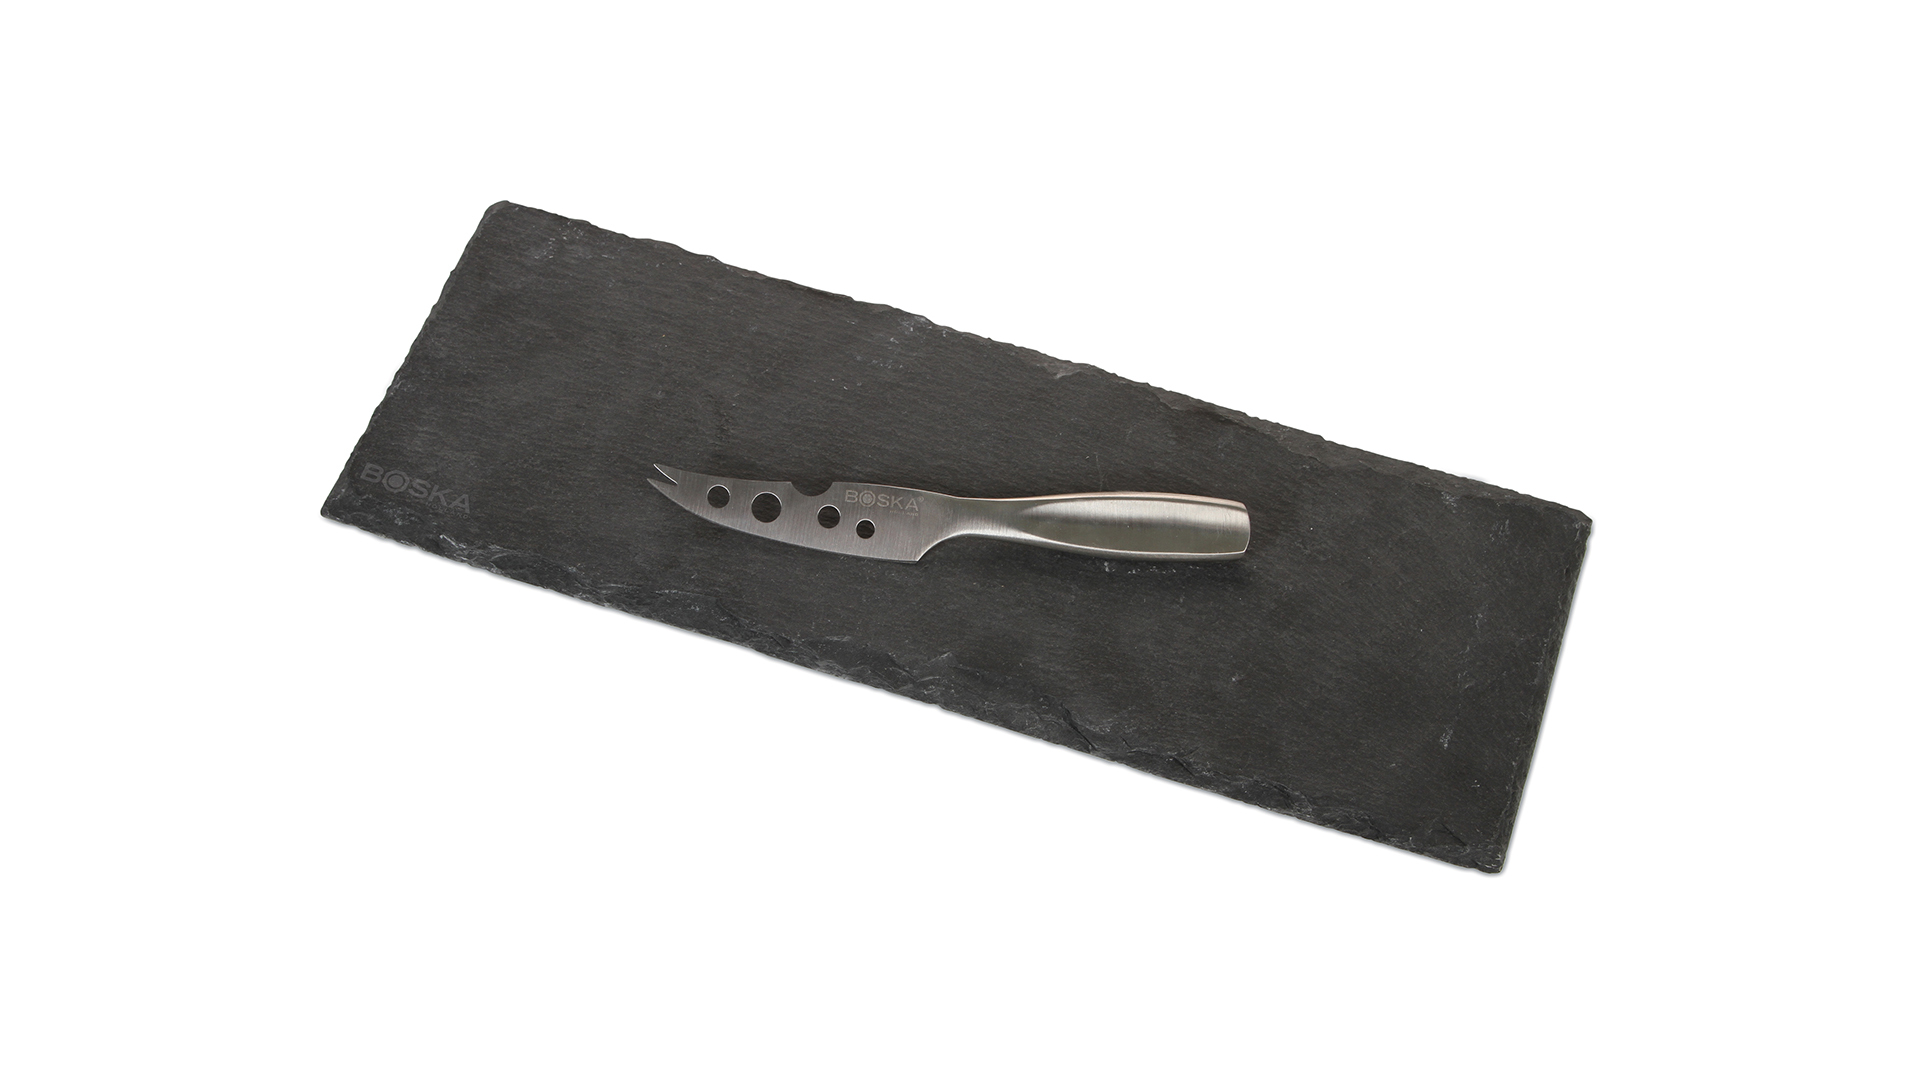 Доска сервировочная для сыра Boska с ножом для мягких сыров, узкая, 33x11.5x1см, сланец